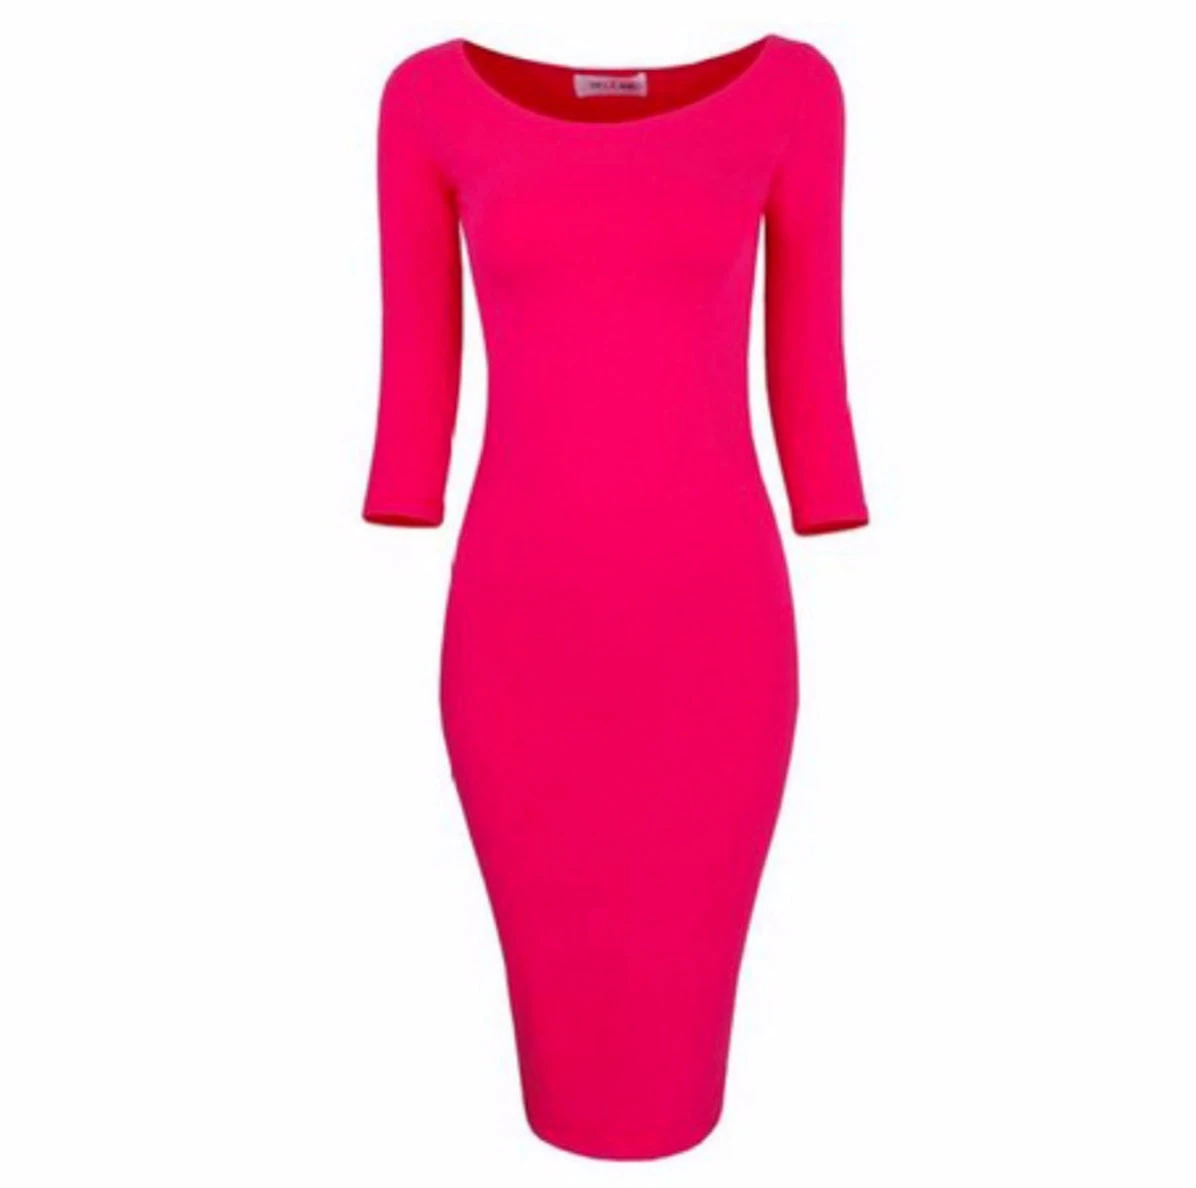 M0172 pink1 Midi Medium Dresses maureens.com boutique